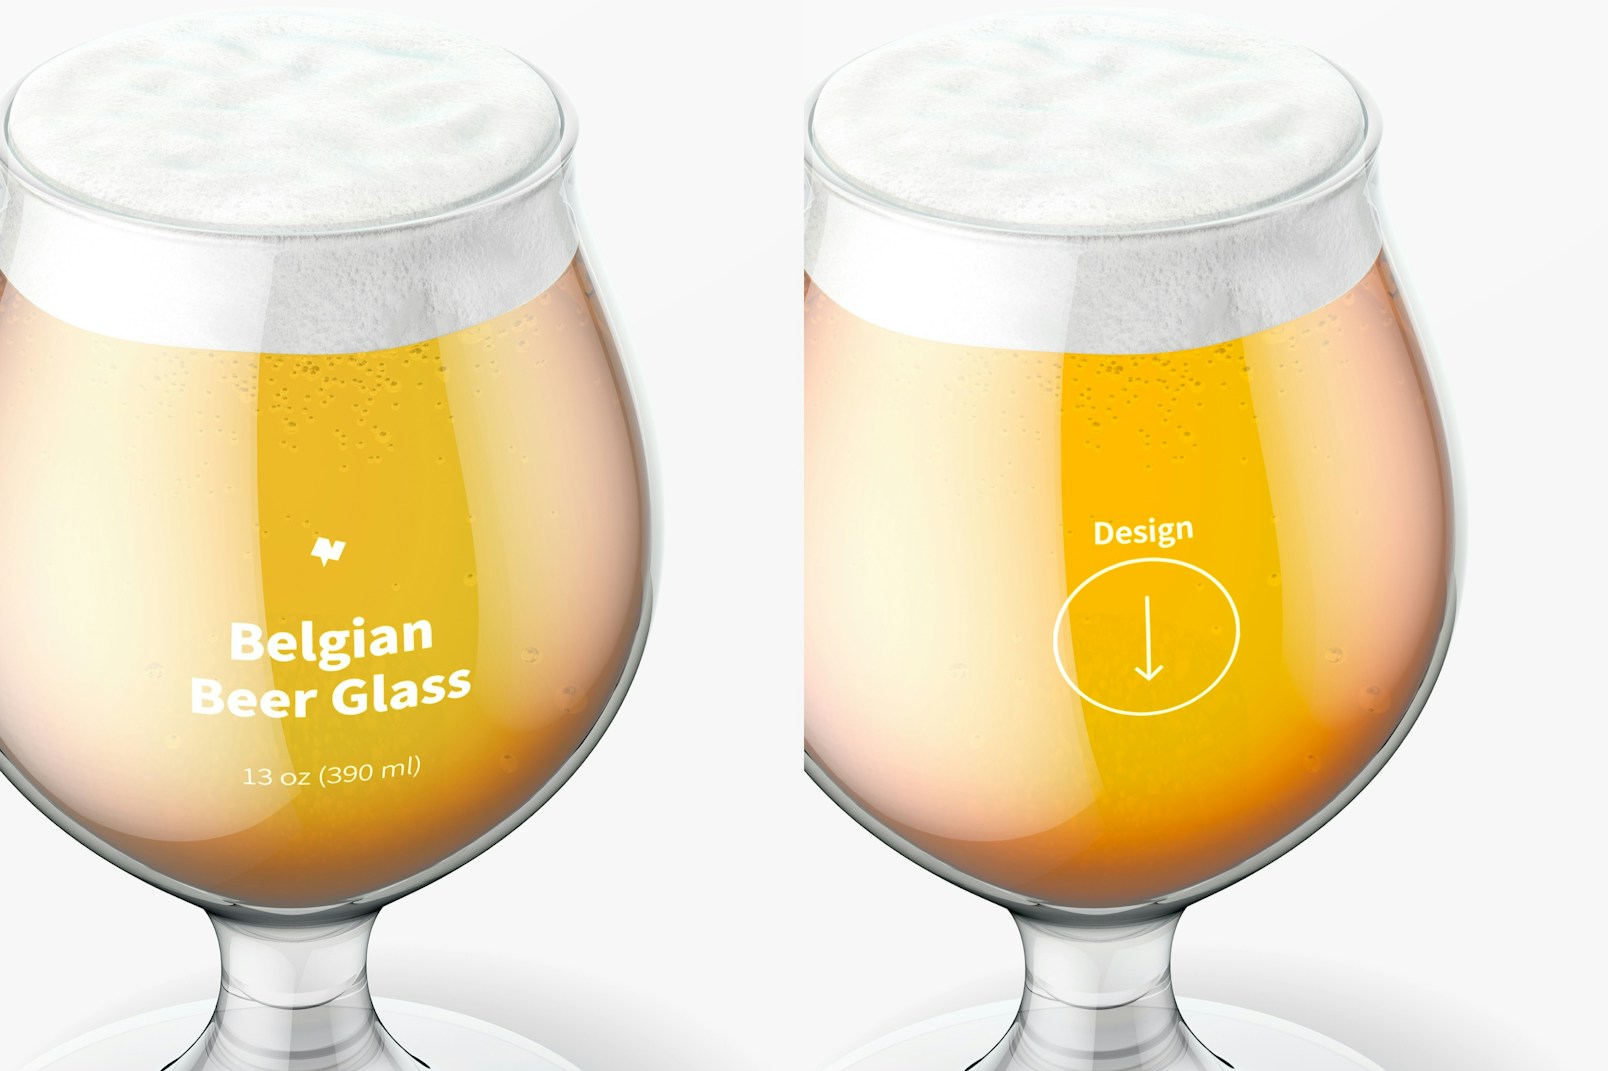 13 oz Belgian Beer Glass Mockup, Close Up